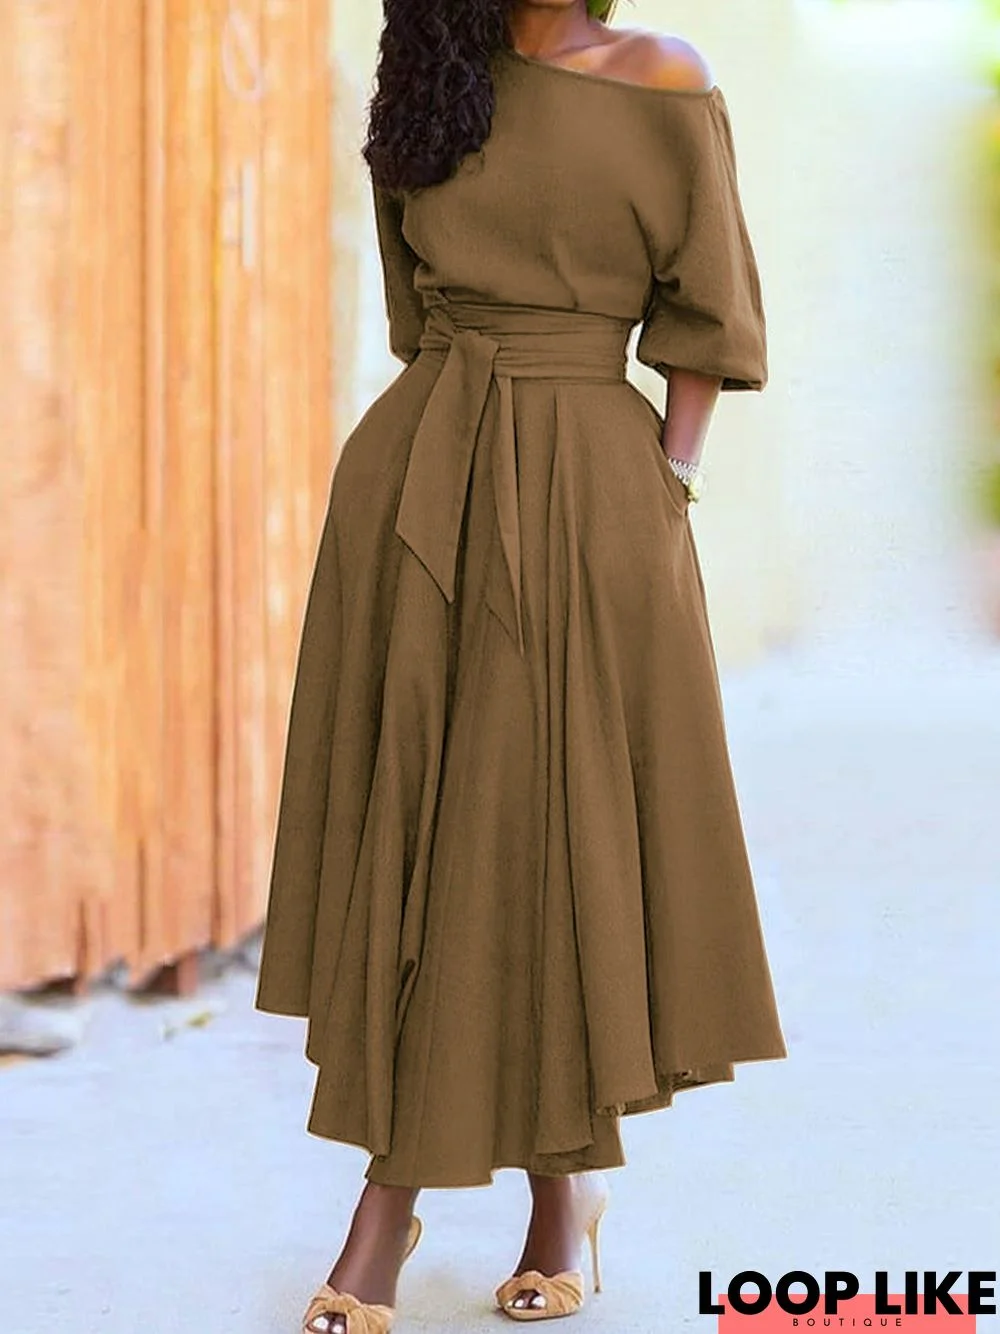 Elegant Summer Formal Dress: Solid Color Tie-Waist Bodycon Dress with Slanted Shoulder